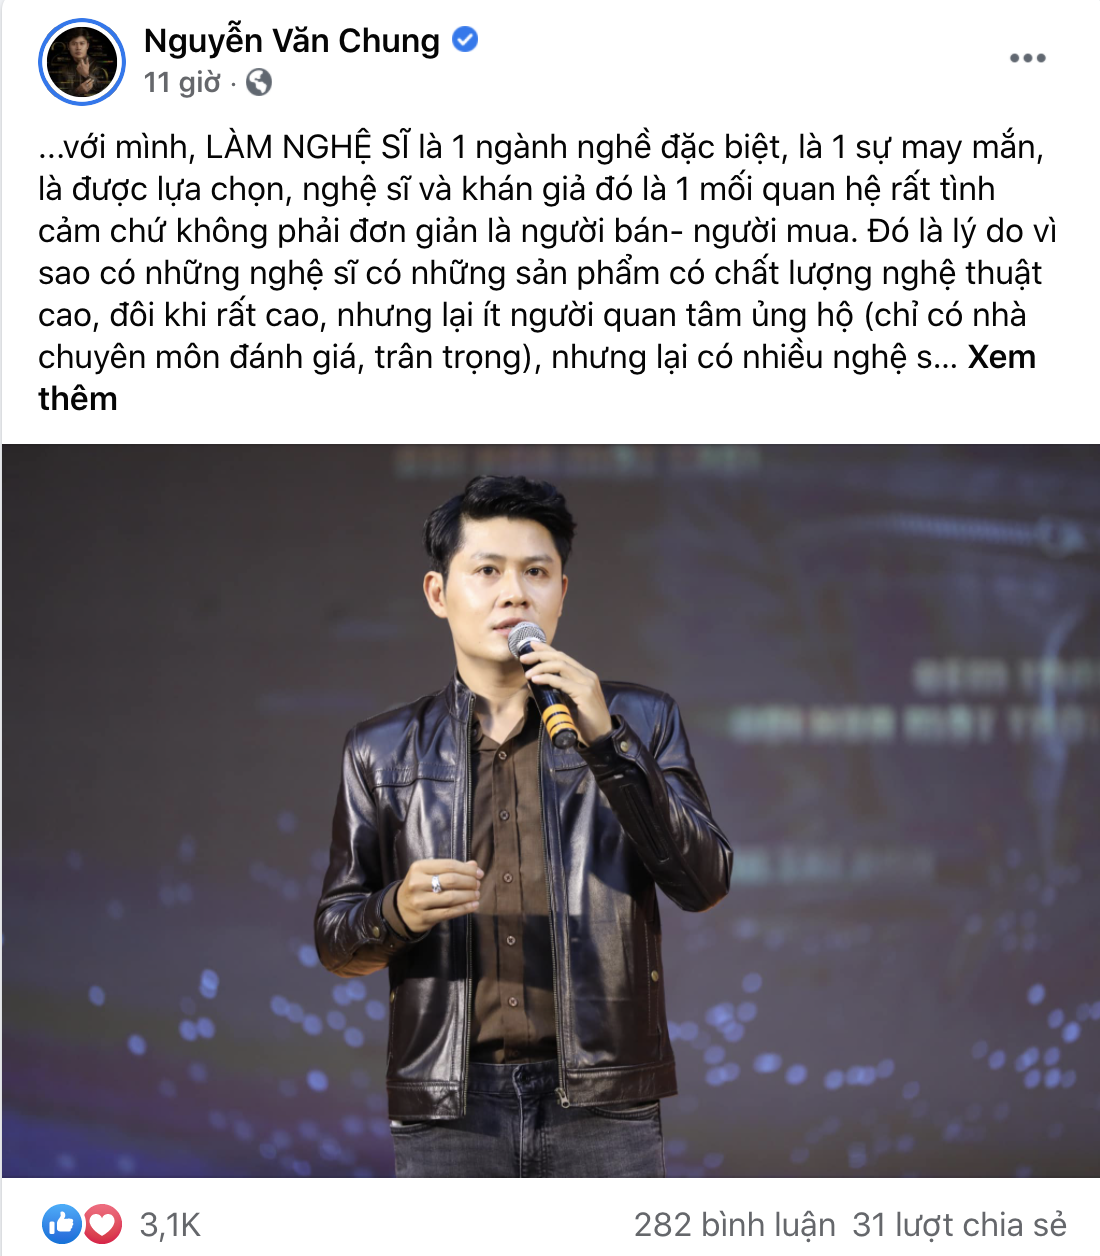 Chưa hết biến: Nhạc sĩ Nguyễn Văn Chung và Vy Oanh khẩu chiến gay gắt về quan điểm khán giả nuôi nghệ sĩ - Ảnh 2.